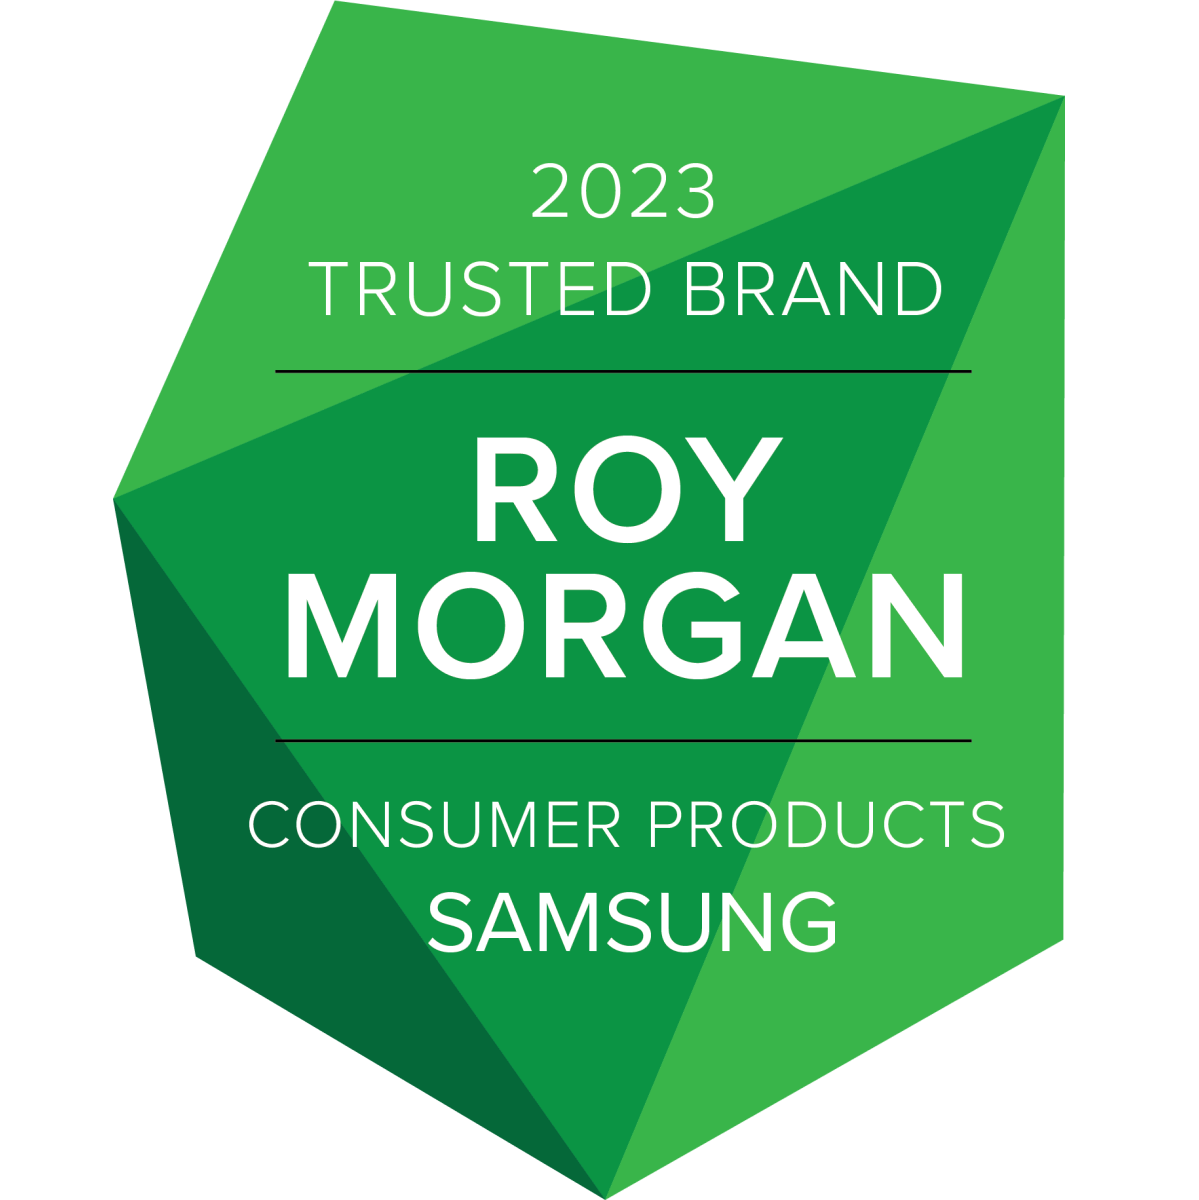 Roy Morgan Award logo